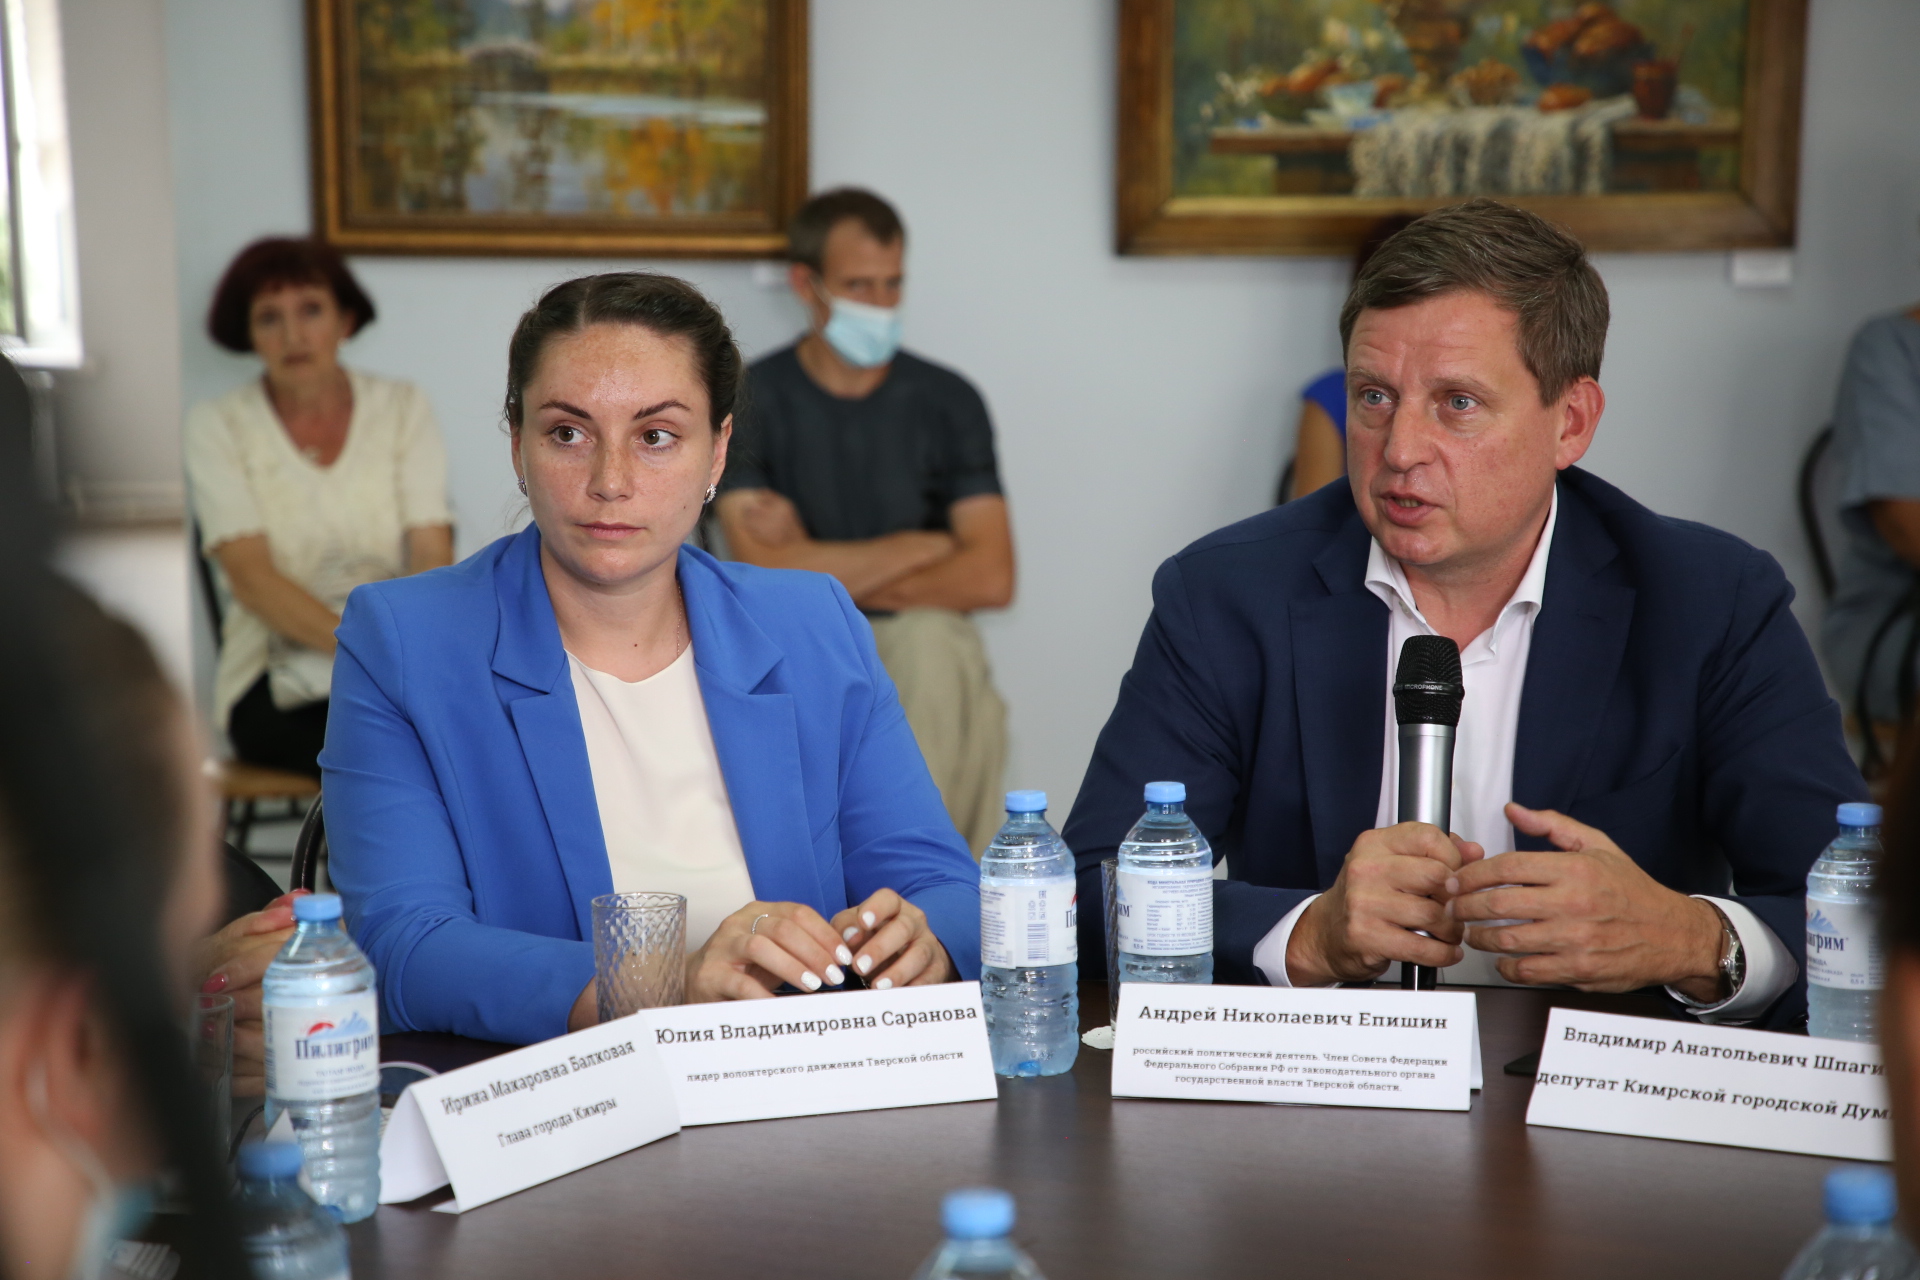 Андрей Епишин и Юлия Саранова поддержали многодетную семью из Кимр, которая могла лишиться жилья